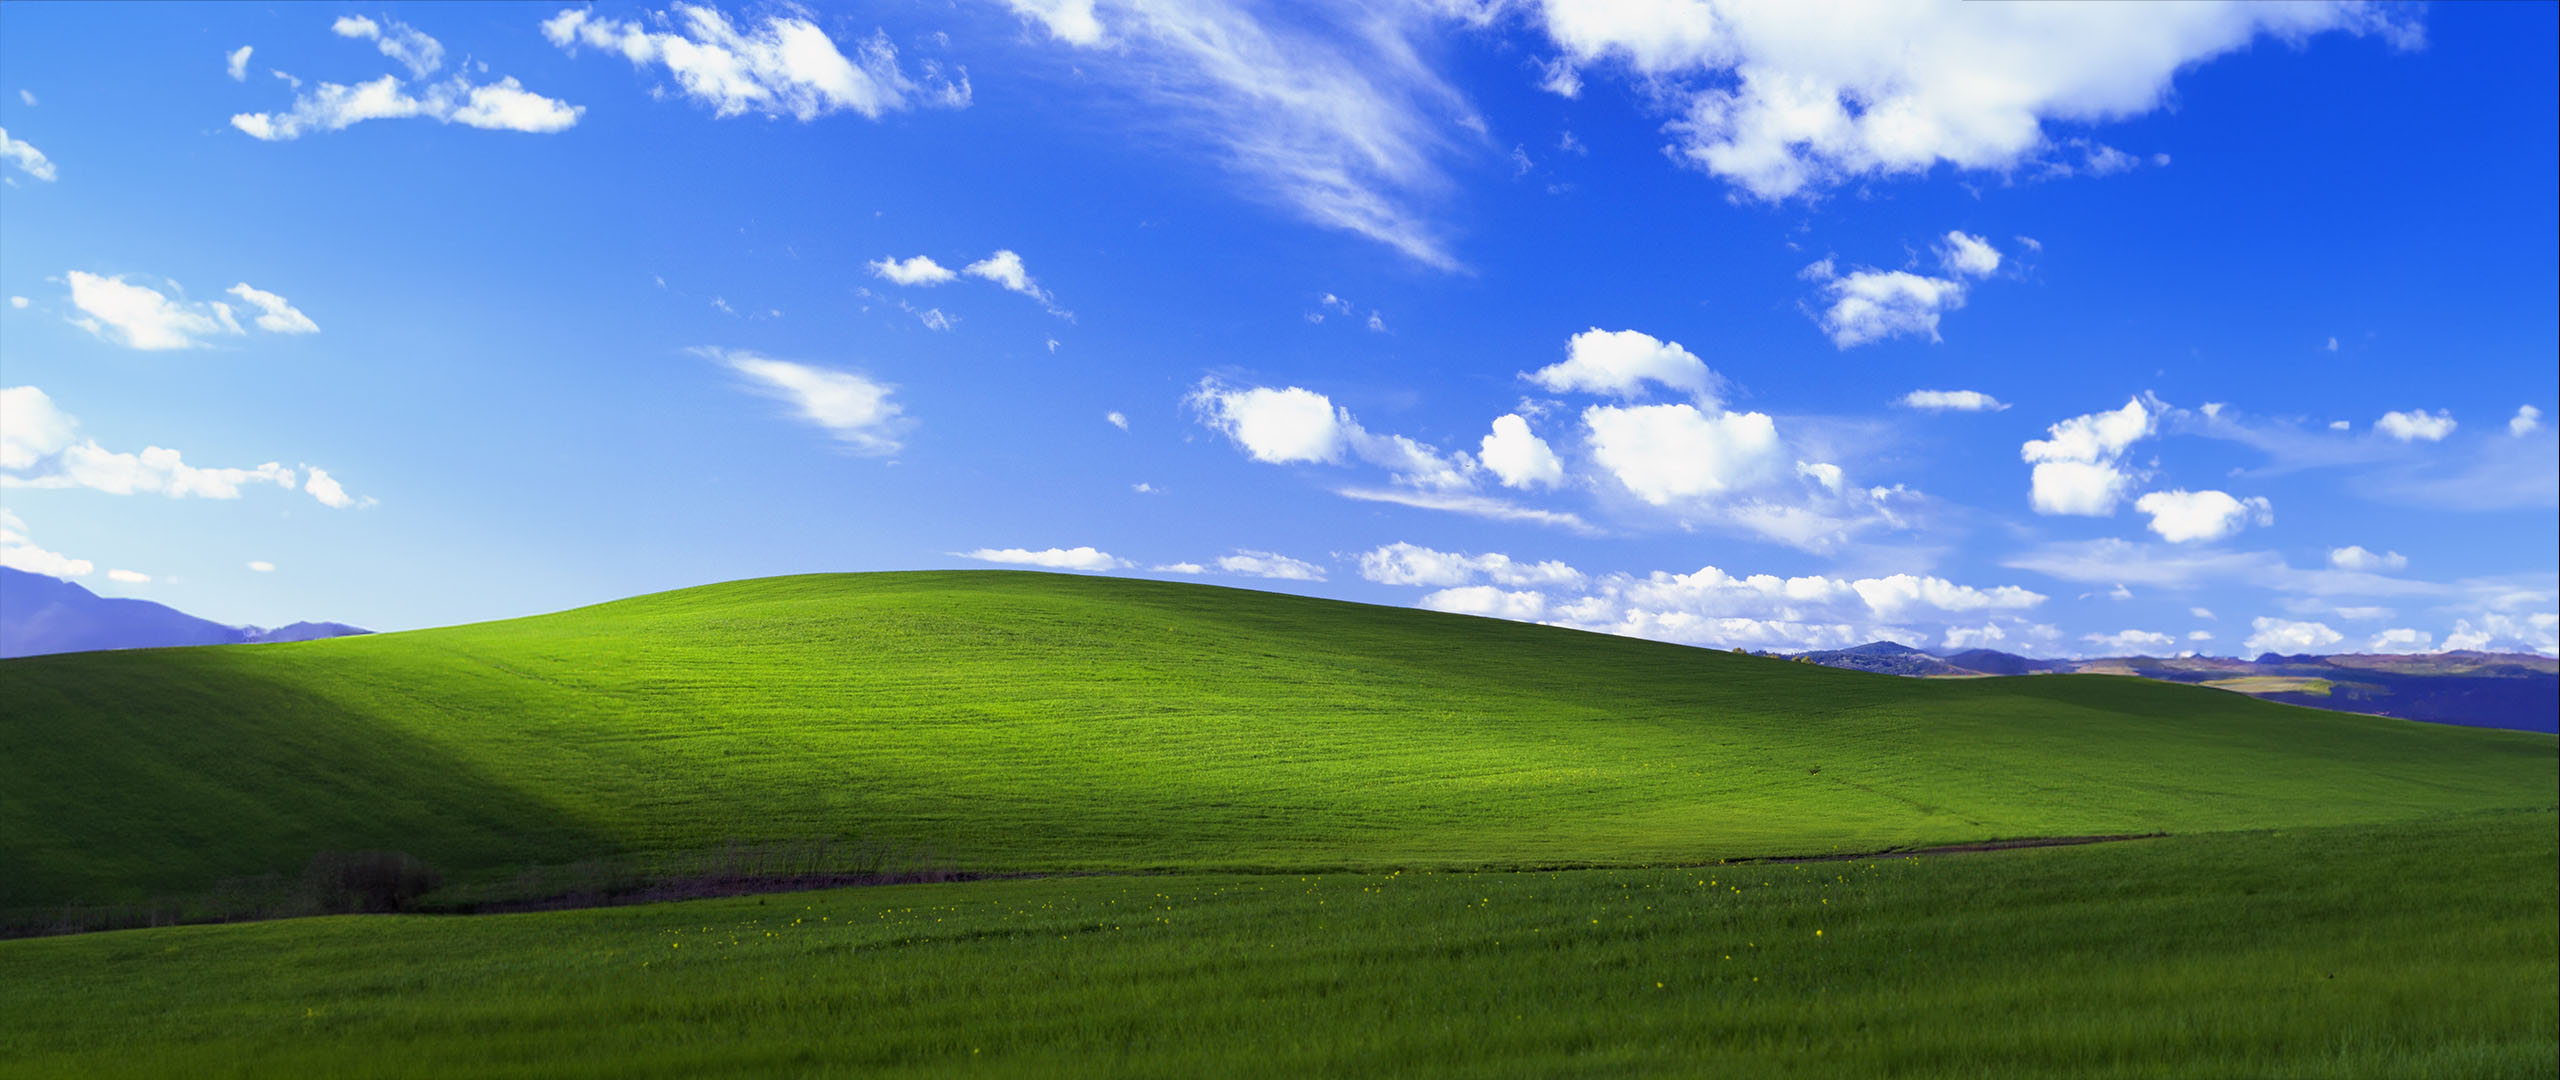 Papel de parede do Windows XP Bliss expandido para 21:9